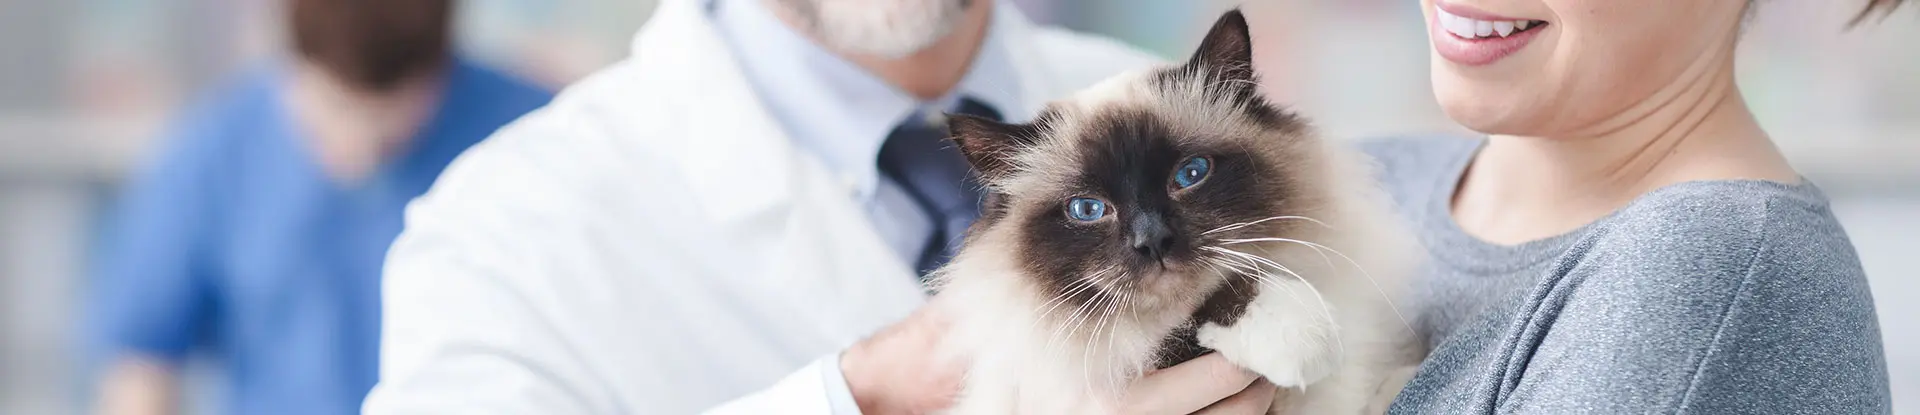 Vétérinaire salarié avec une patiente et son chat - La Communauté MACSF